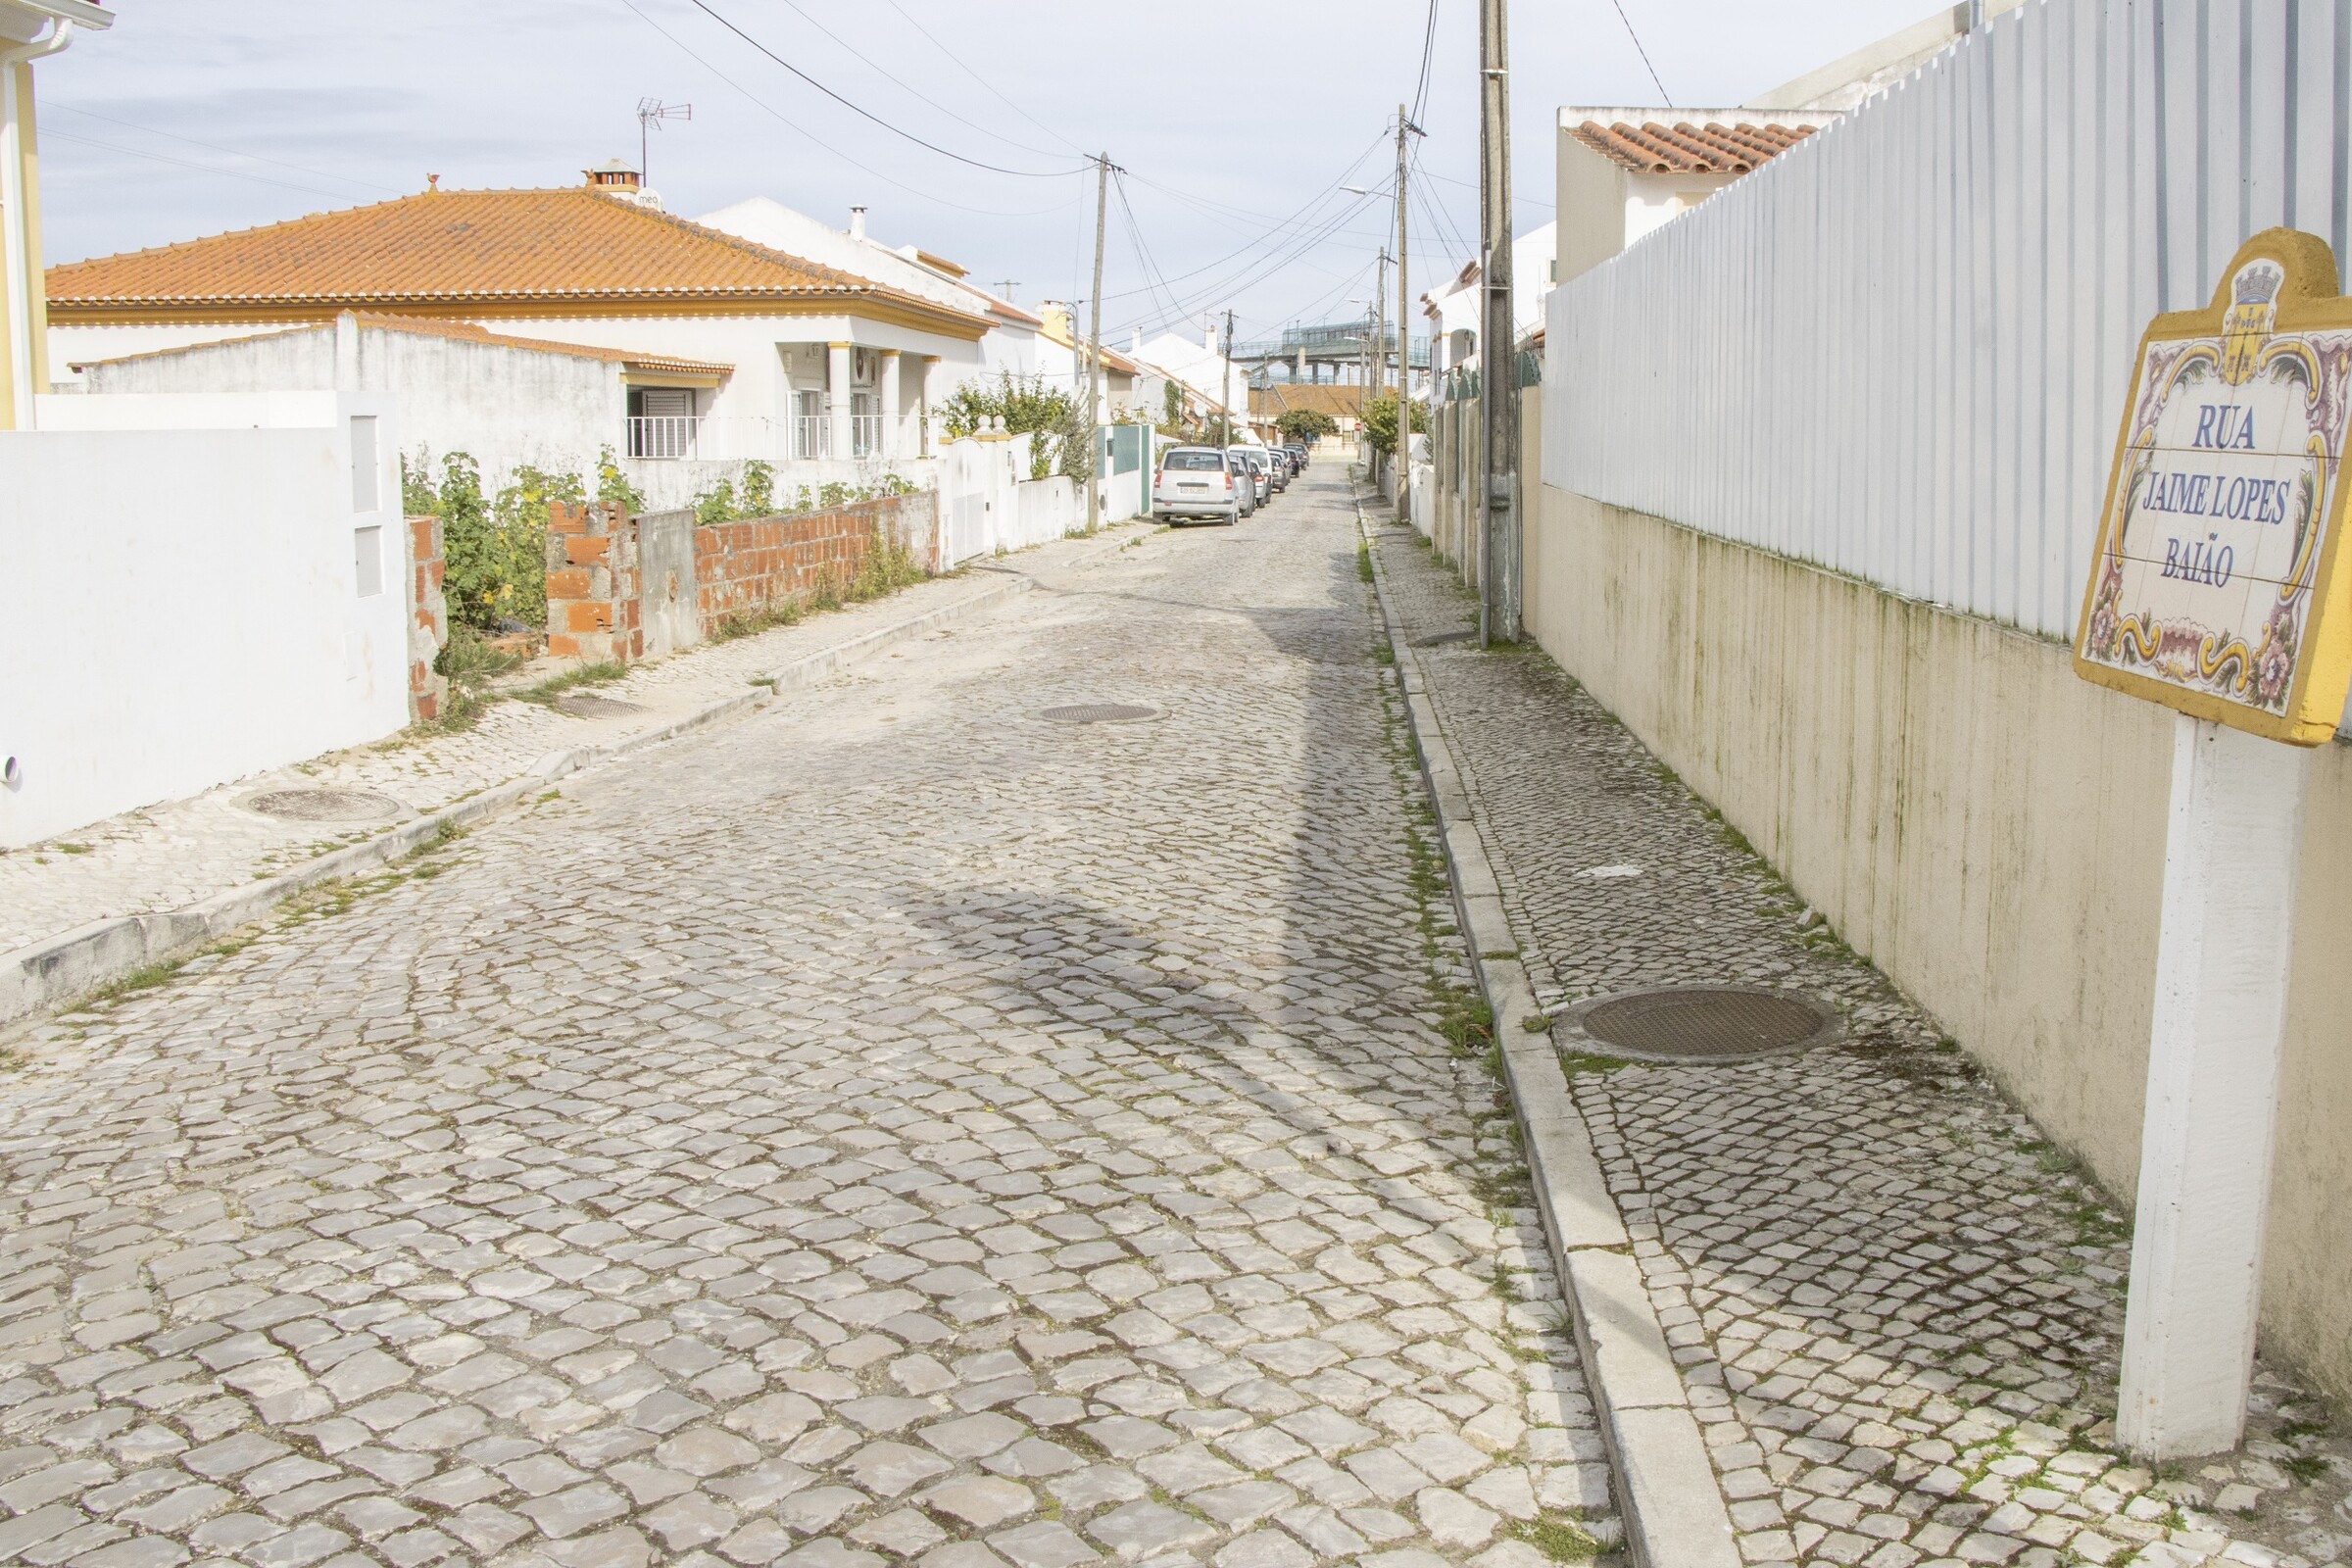 Repavimentação da Rua Jaime Lopes Baião/Venda do Alcaide em concurso